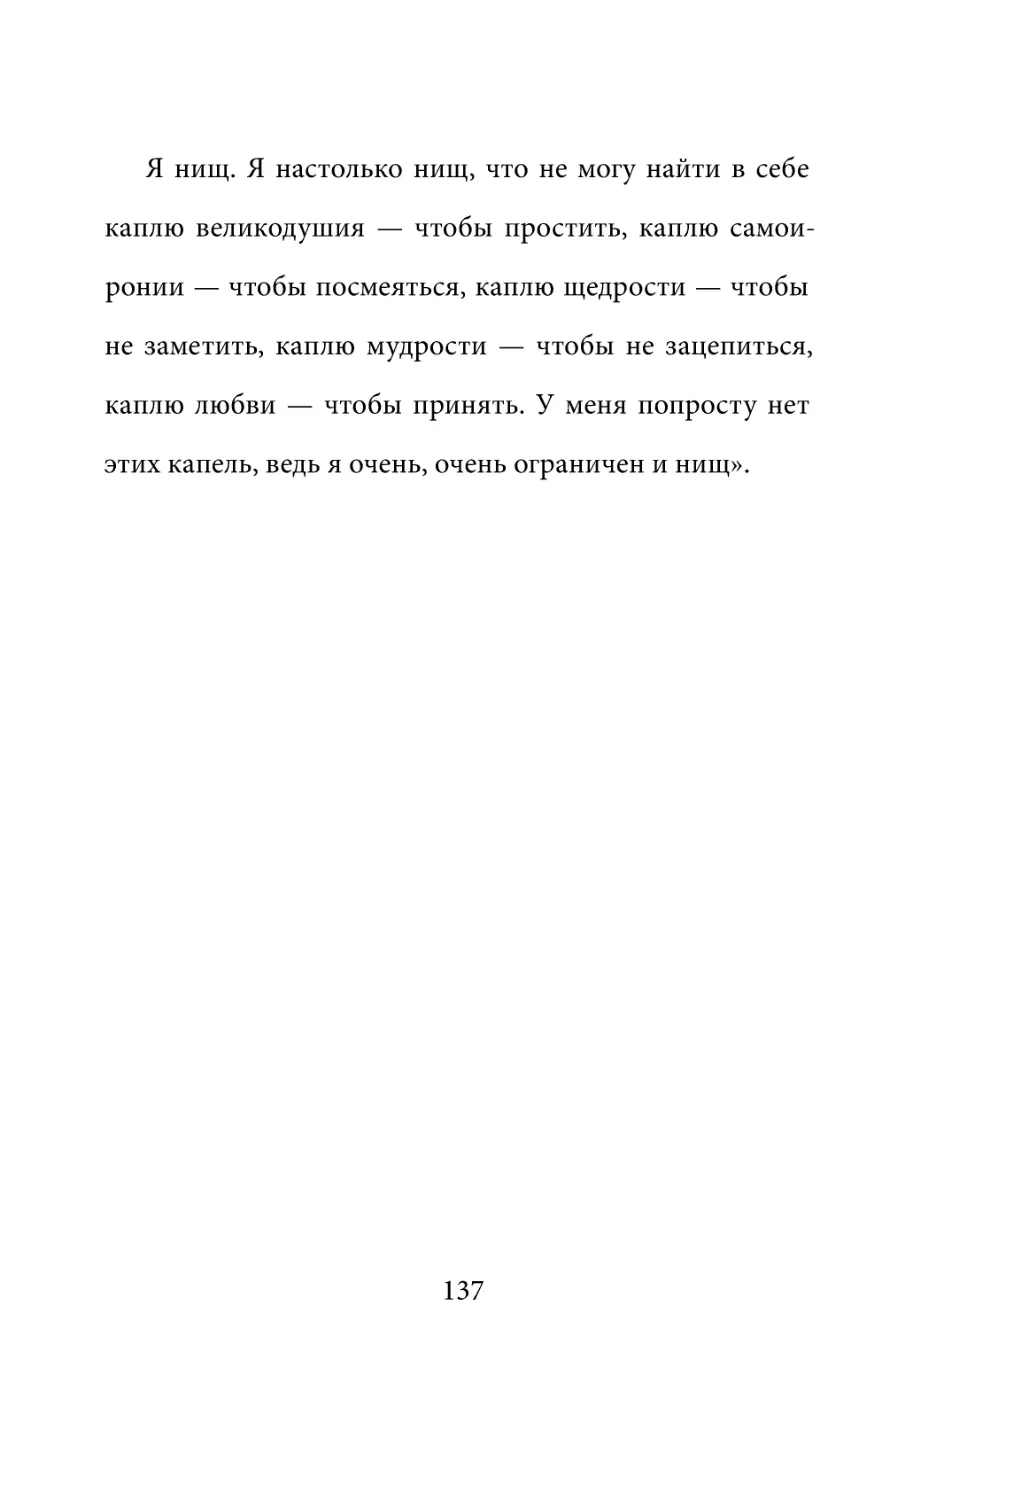 Sergey_Filippov_Dnevnik_samorazvitia_Evolyutsia_Vnutrennego_Sostoyania_137.pdf (p.137)